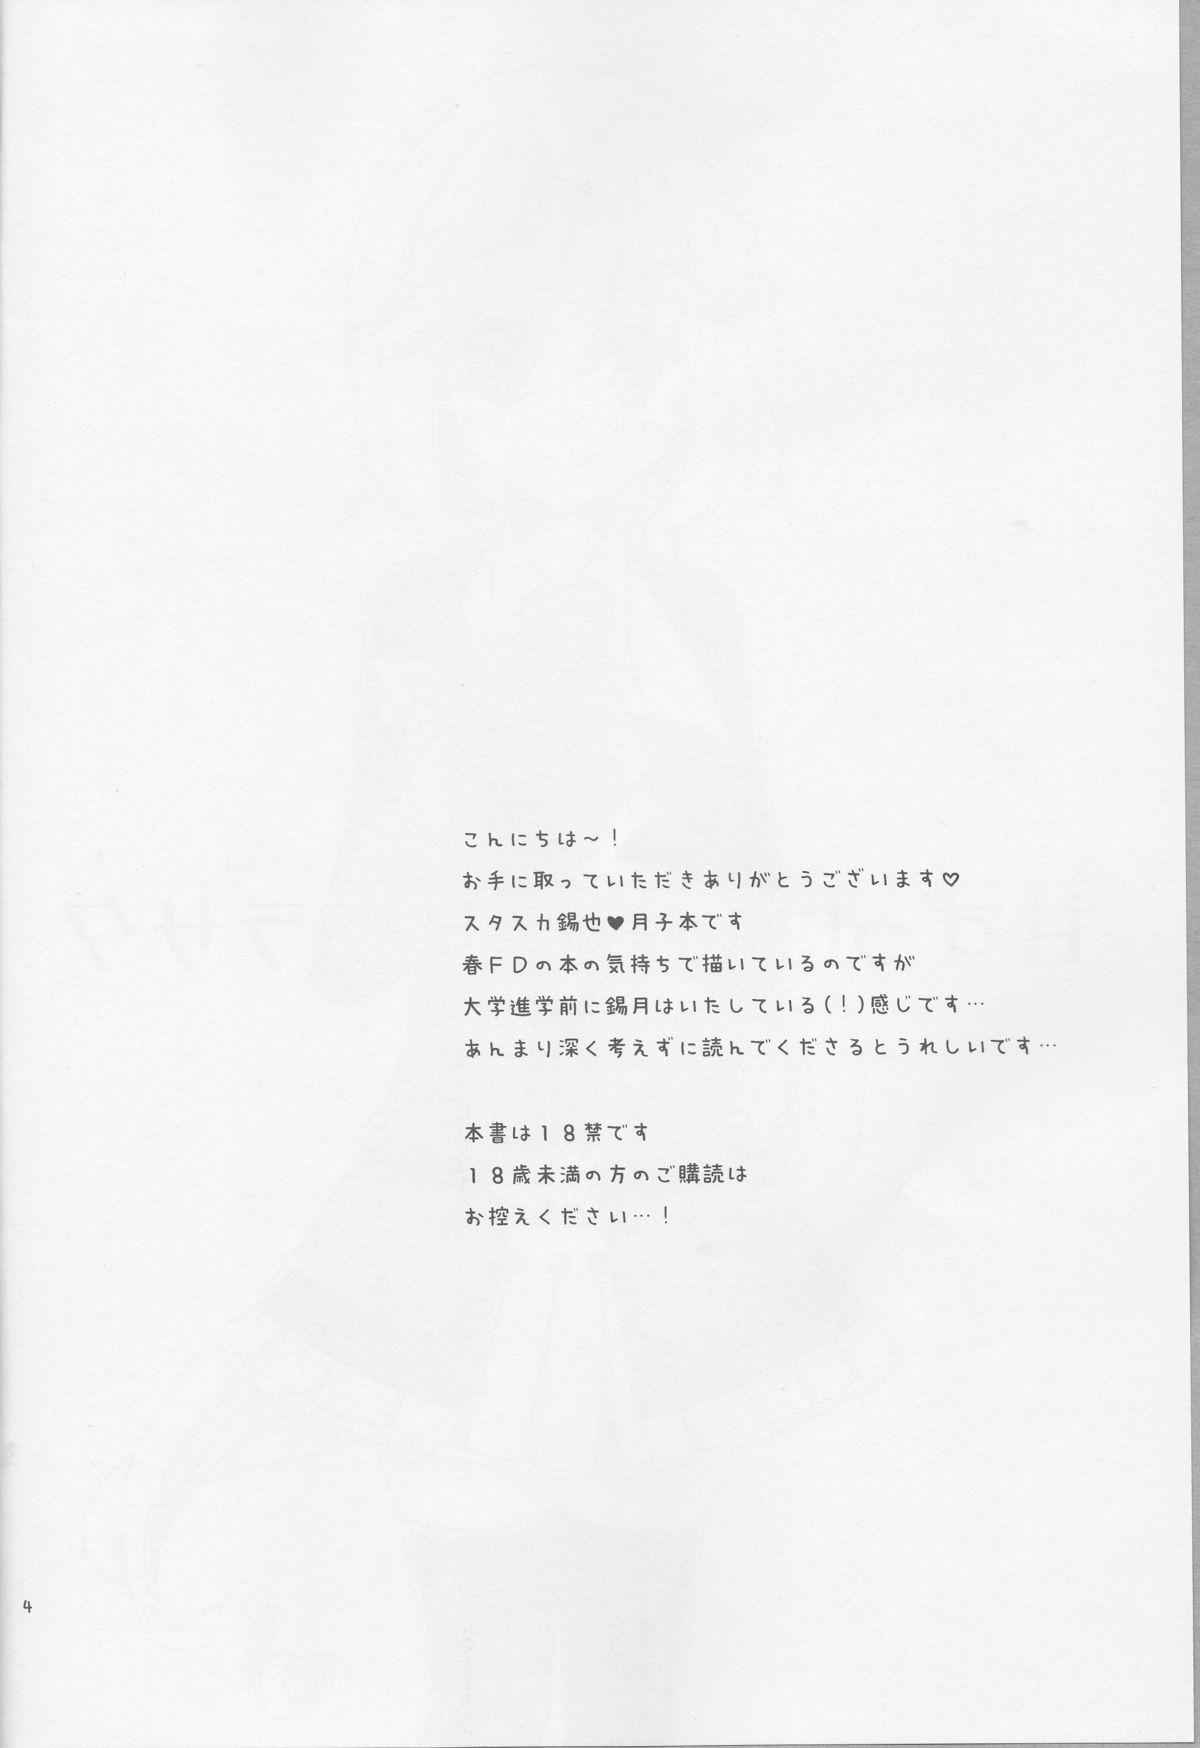 Pervs Amazuppai Haru ni Sakura Saku - Starry sky Stockings - Page 4